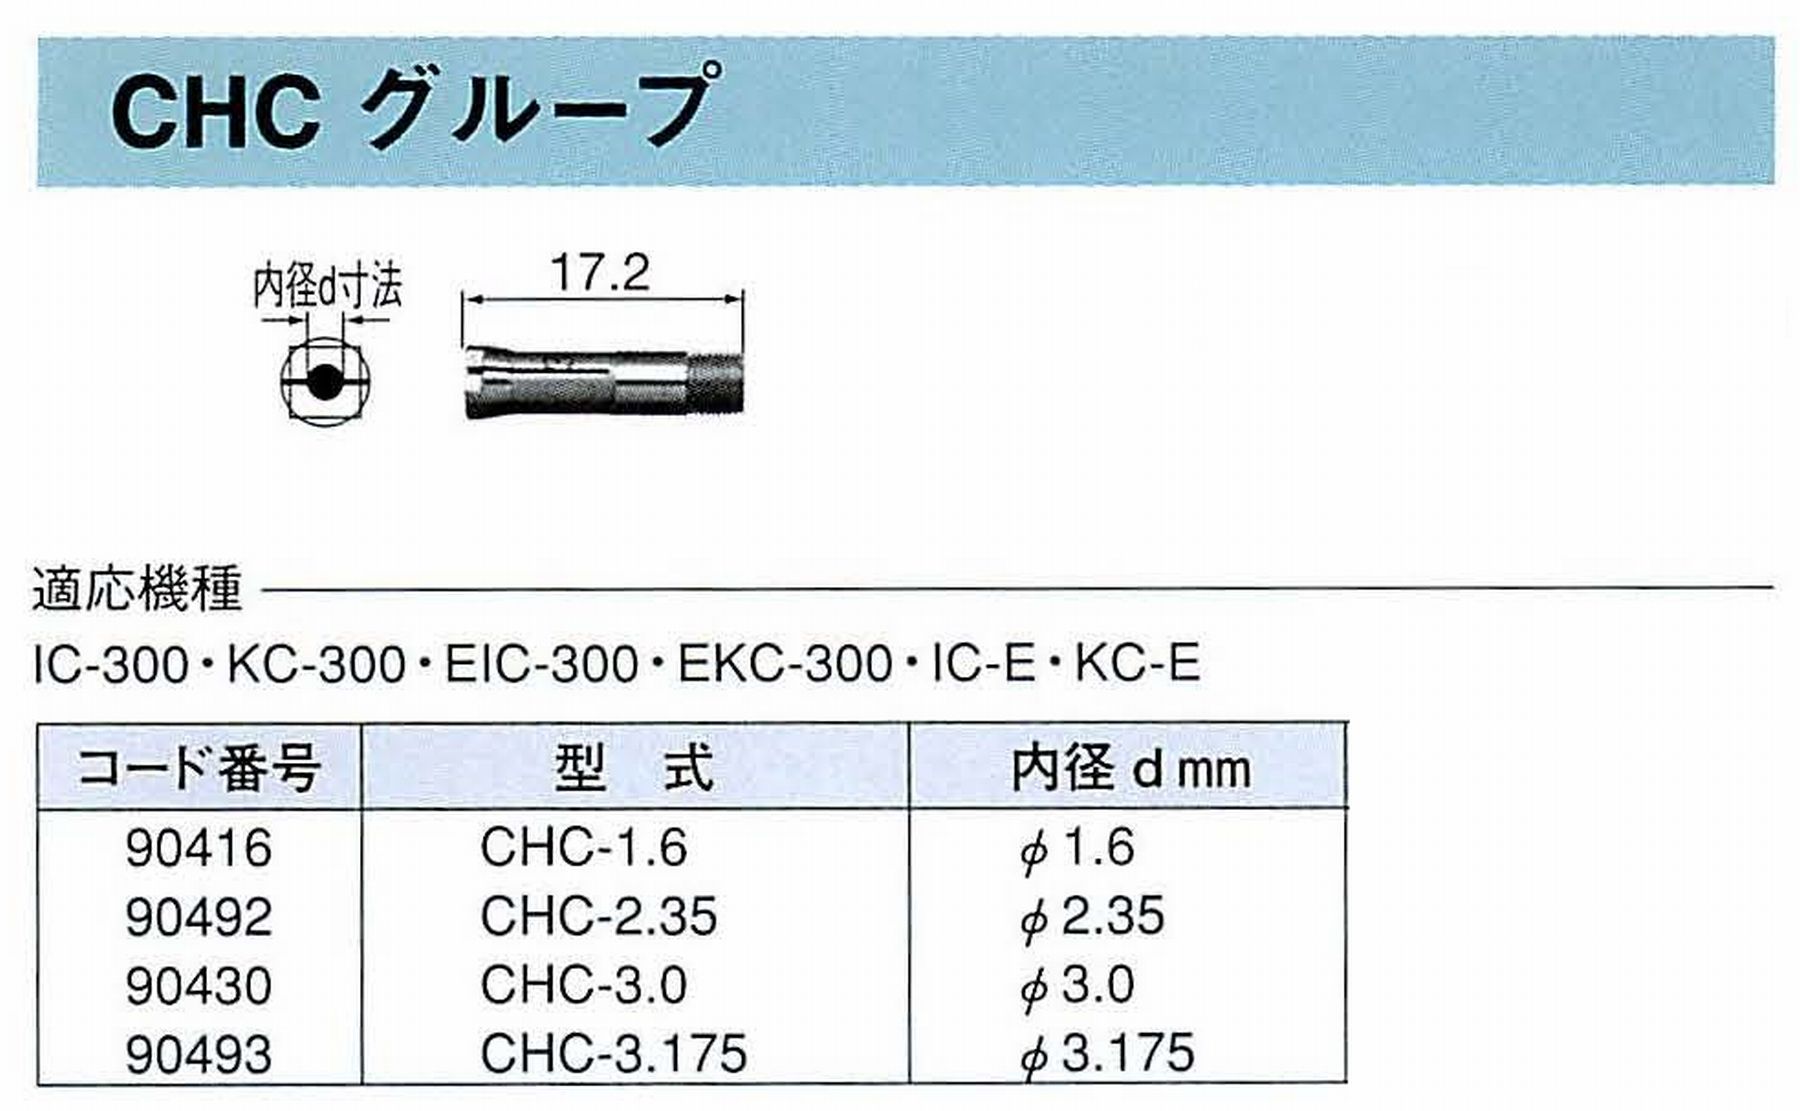 ナカニシ/NAKANISHI コレットチャック コード番号 90493 型式 CHC-3.175 内径:Φ3.175